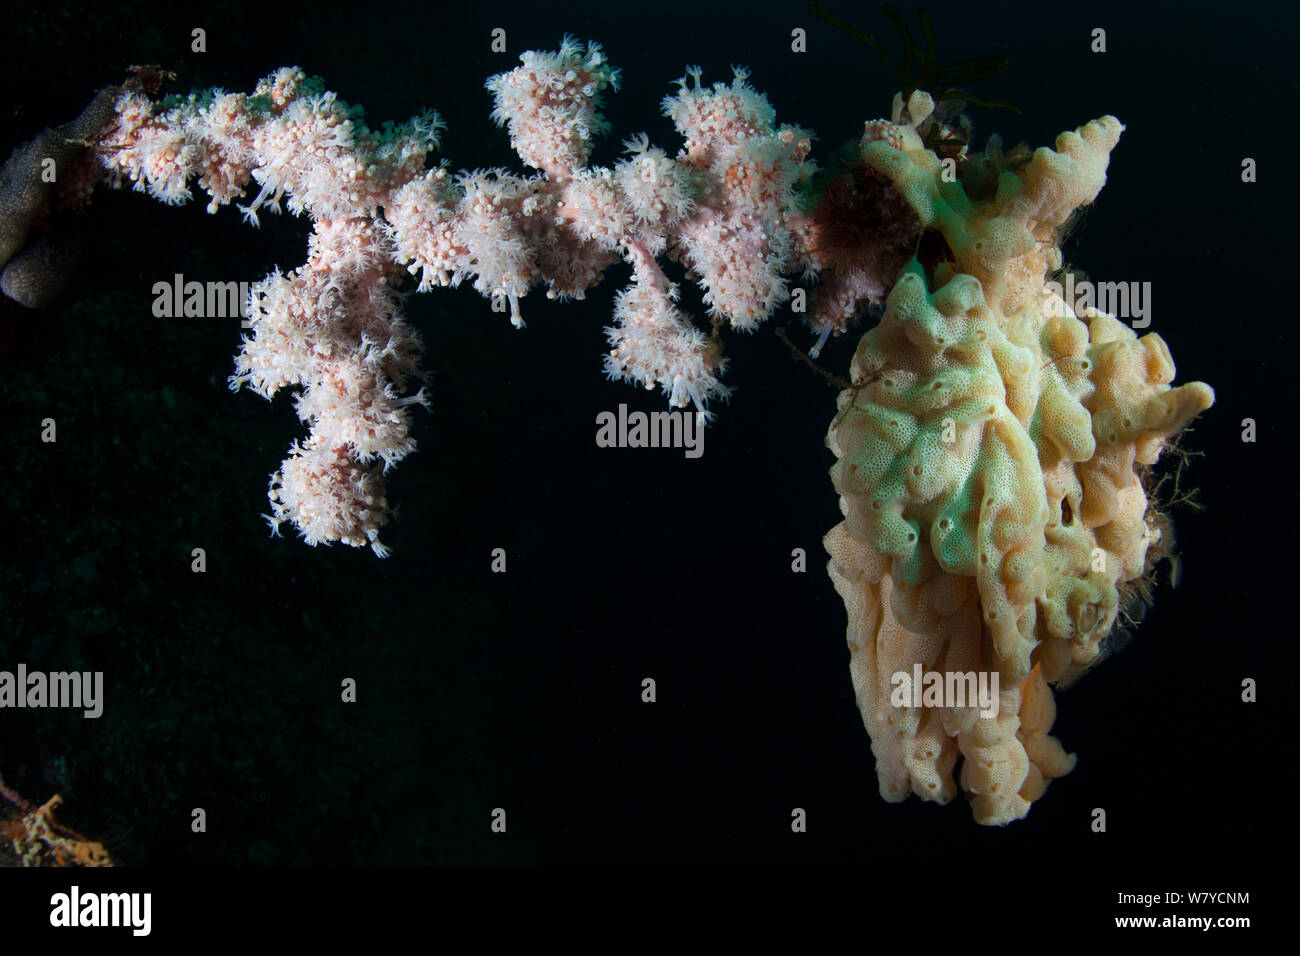 Weißen Weichkorallen (Alcyonium sp) und ein Wachs Ascidian (nicht klassifiziert) ungeschlechtlich vermehren auf einem toten Black Coral Tree in den Dusky Sound, Fiordland National Park, Neuseeland. April 2014 Stockfoto